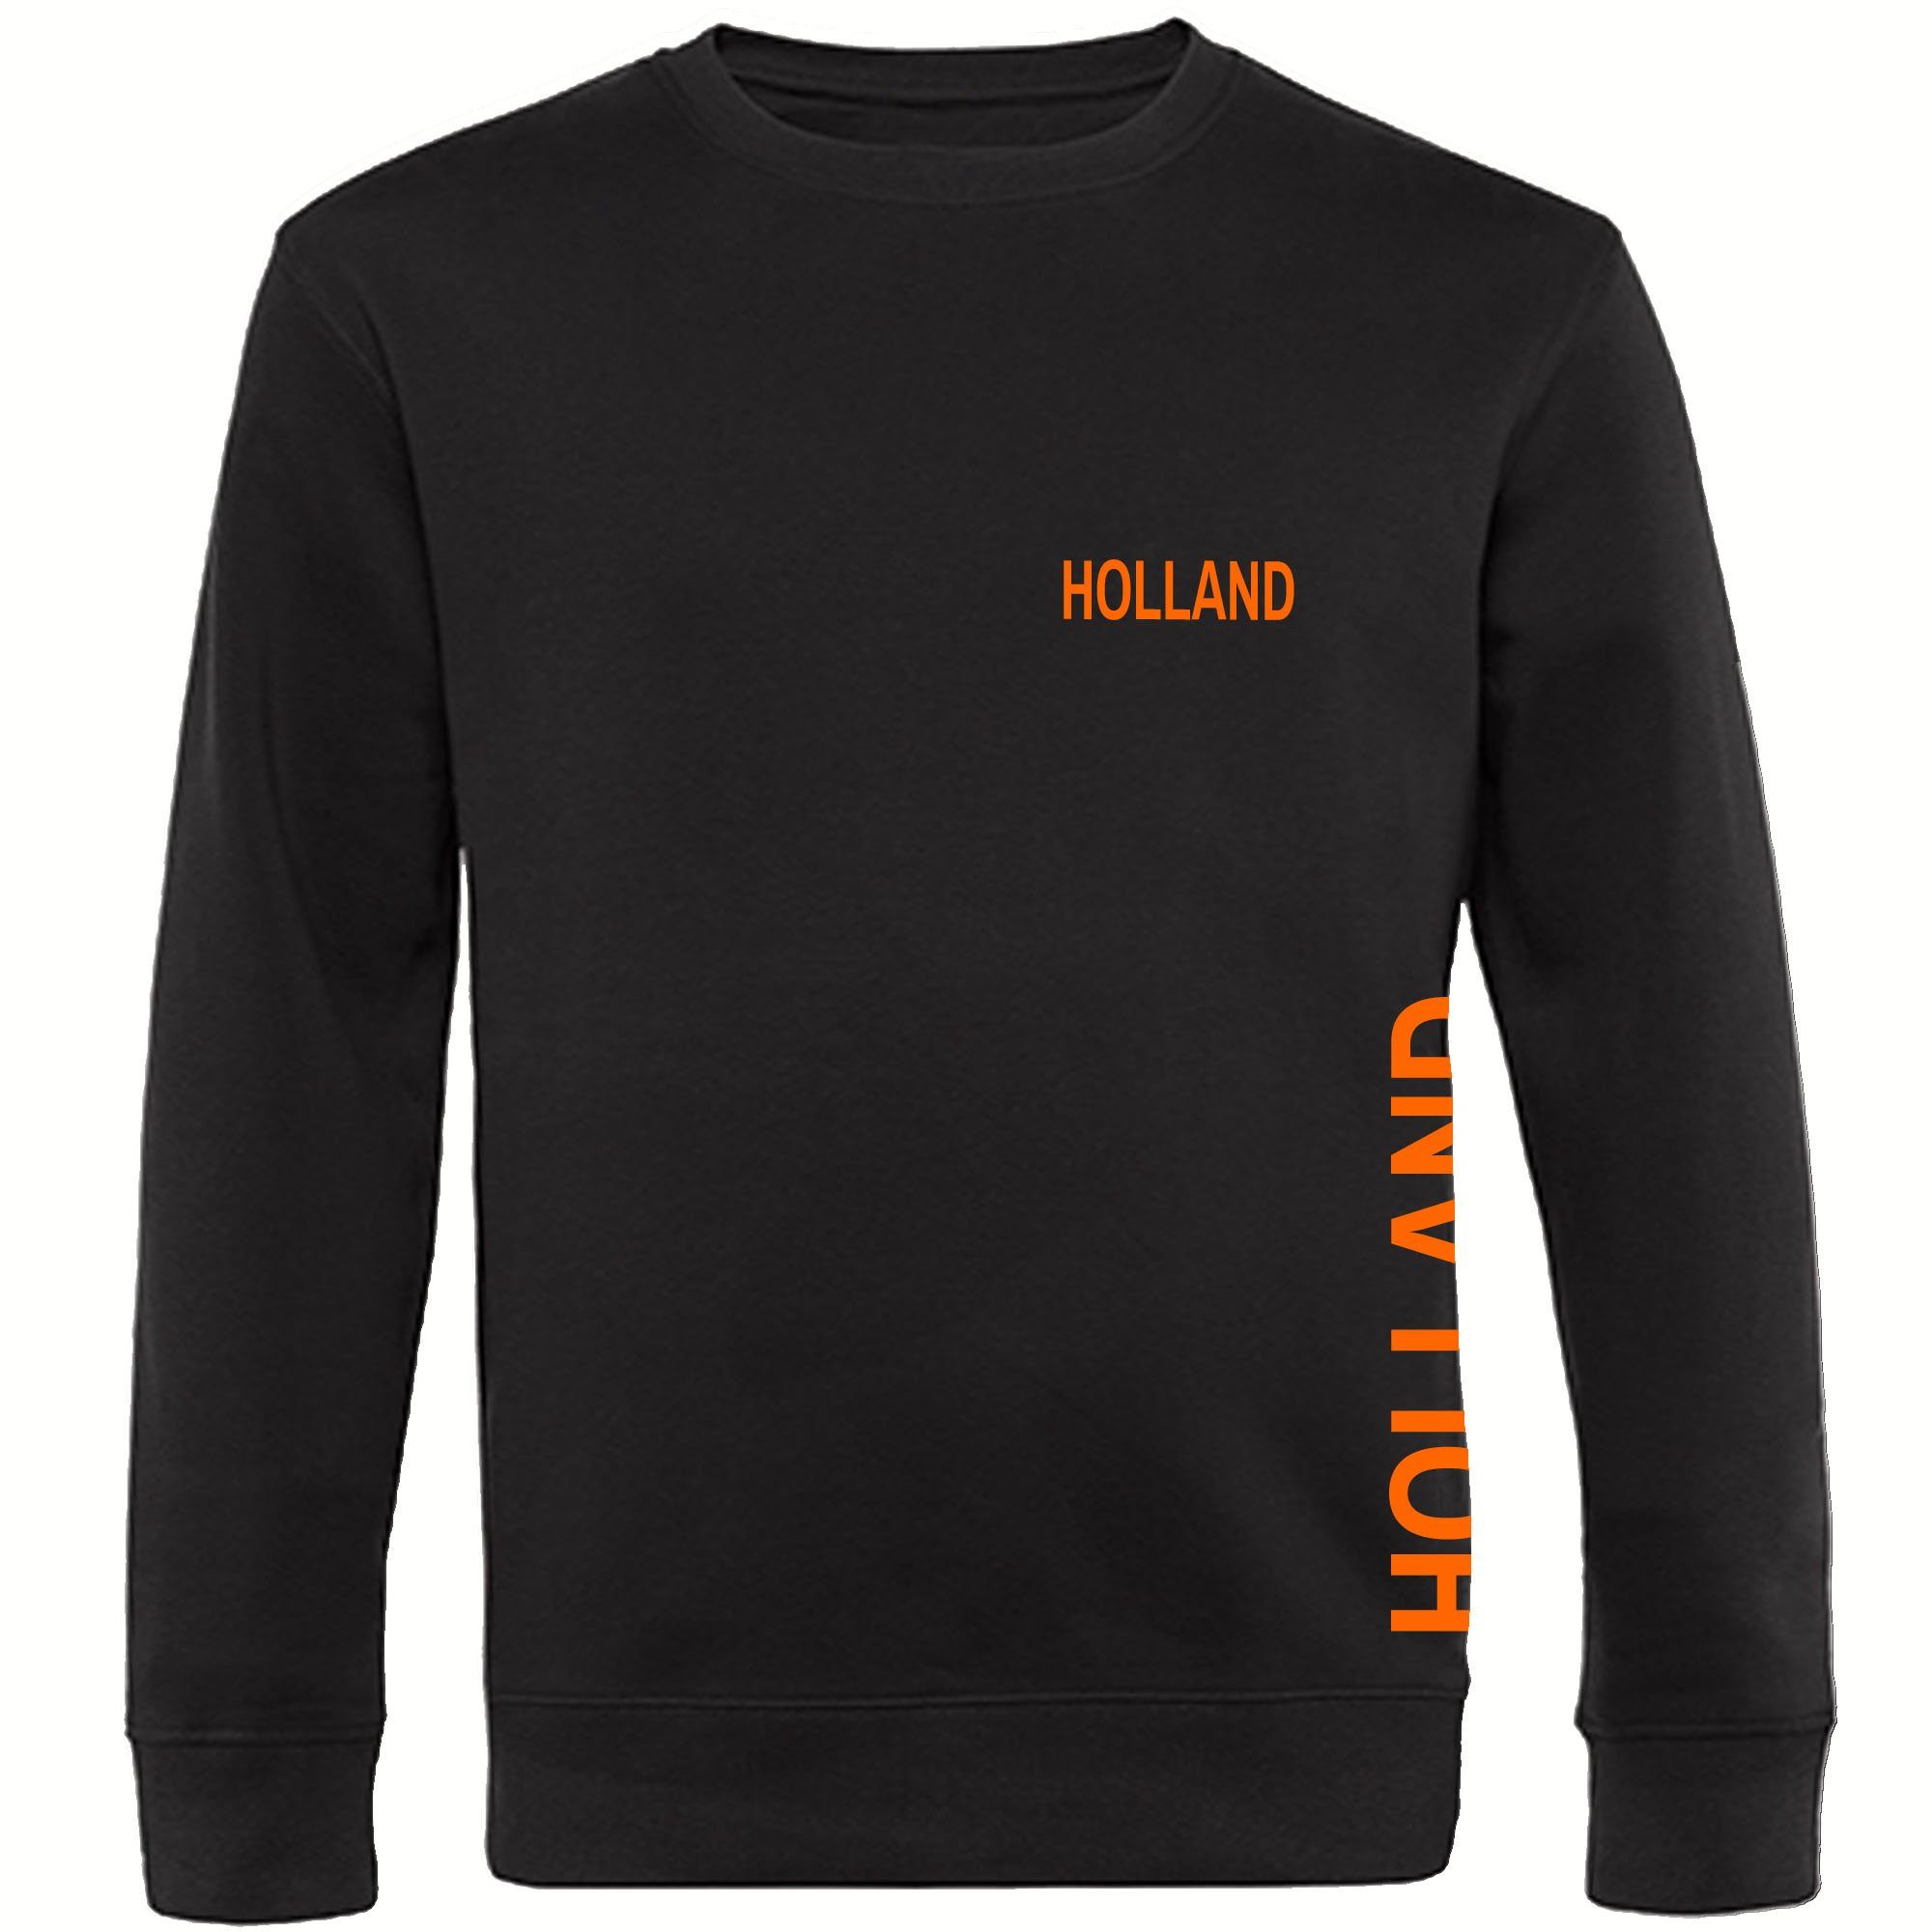 multifanshop Sweatshirt Holland - Brust & Seite - Pullover